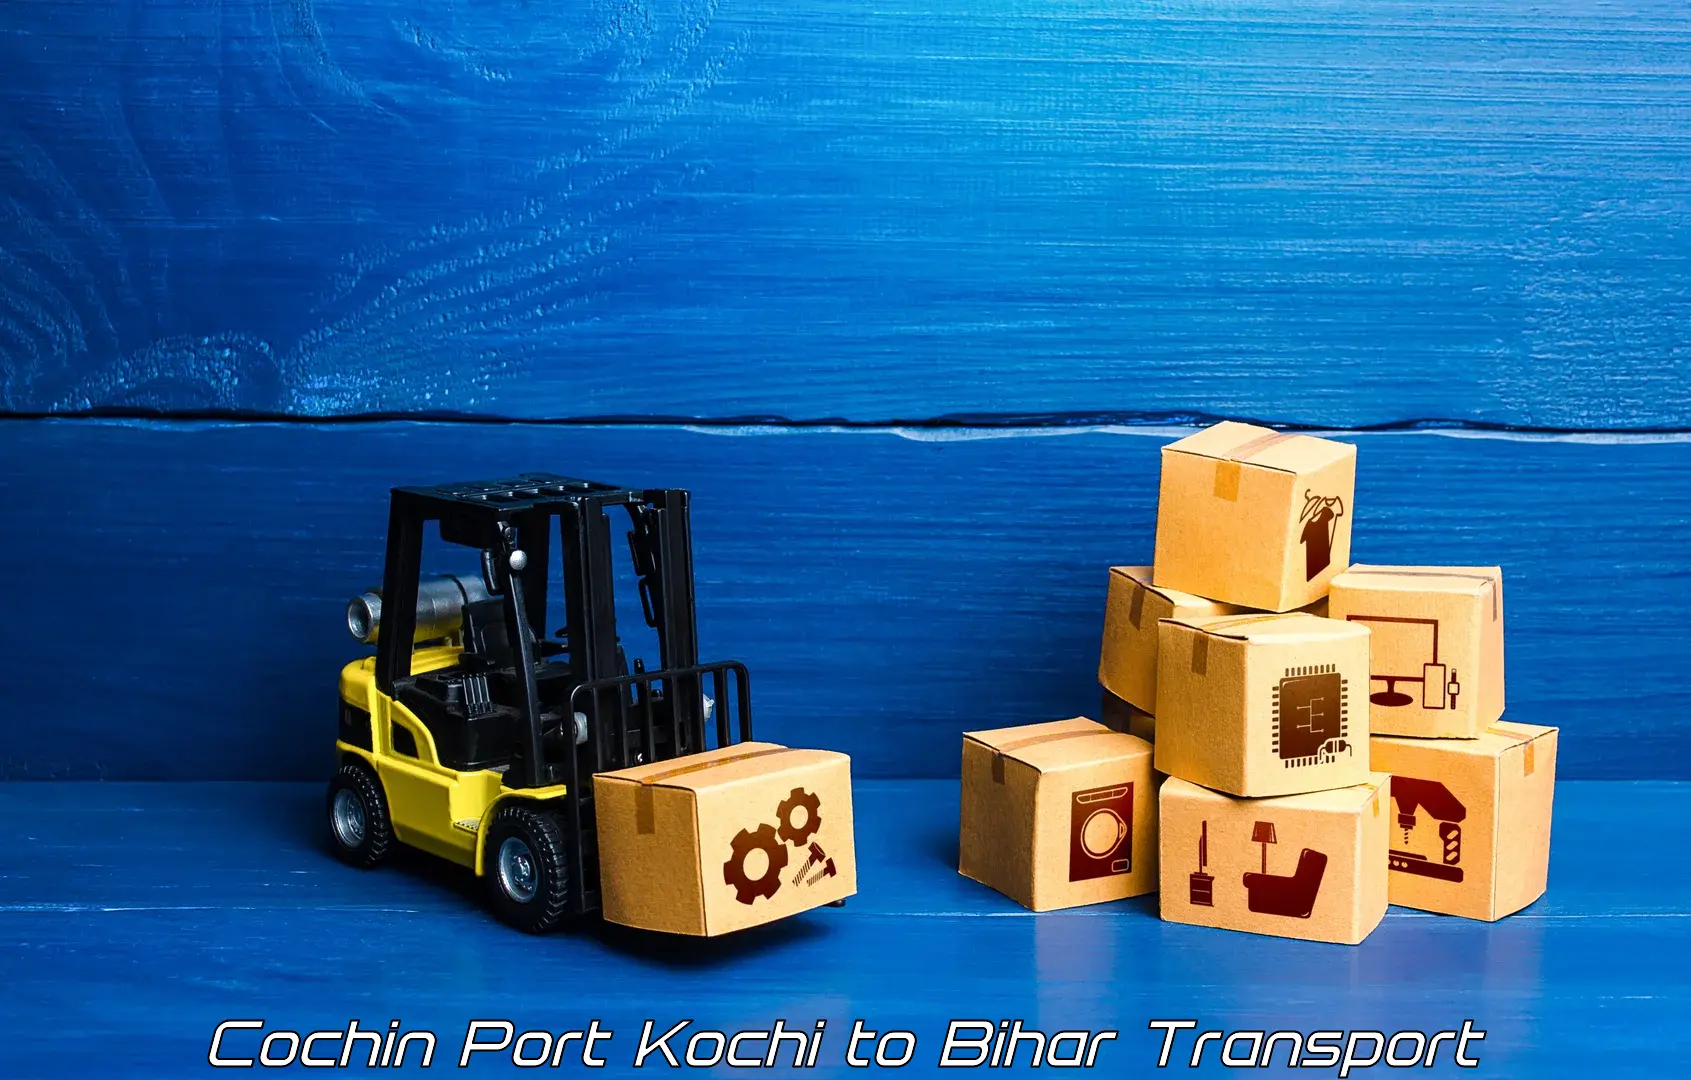 Bike shipping service Cochin Port Kochi to Bihar